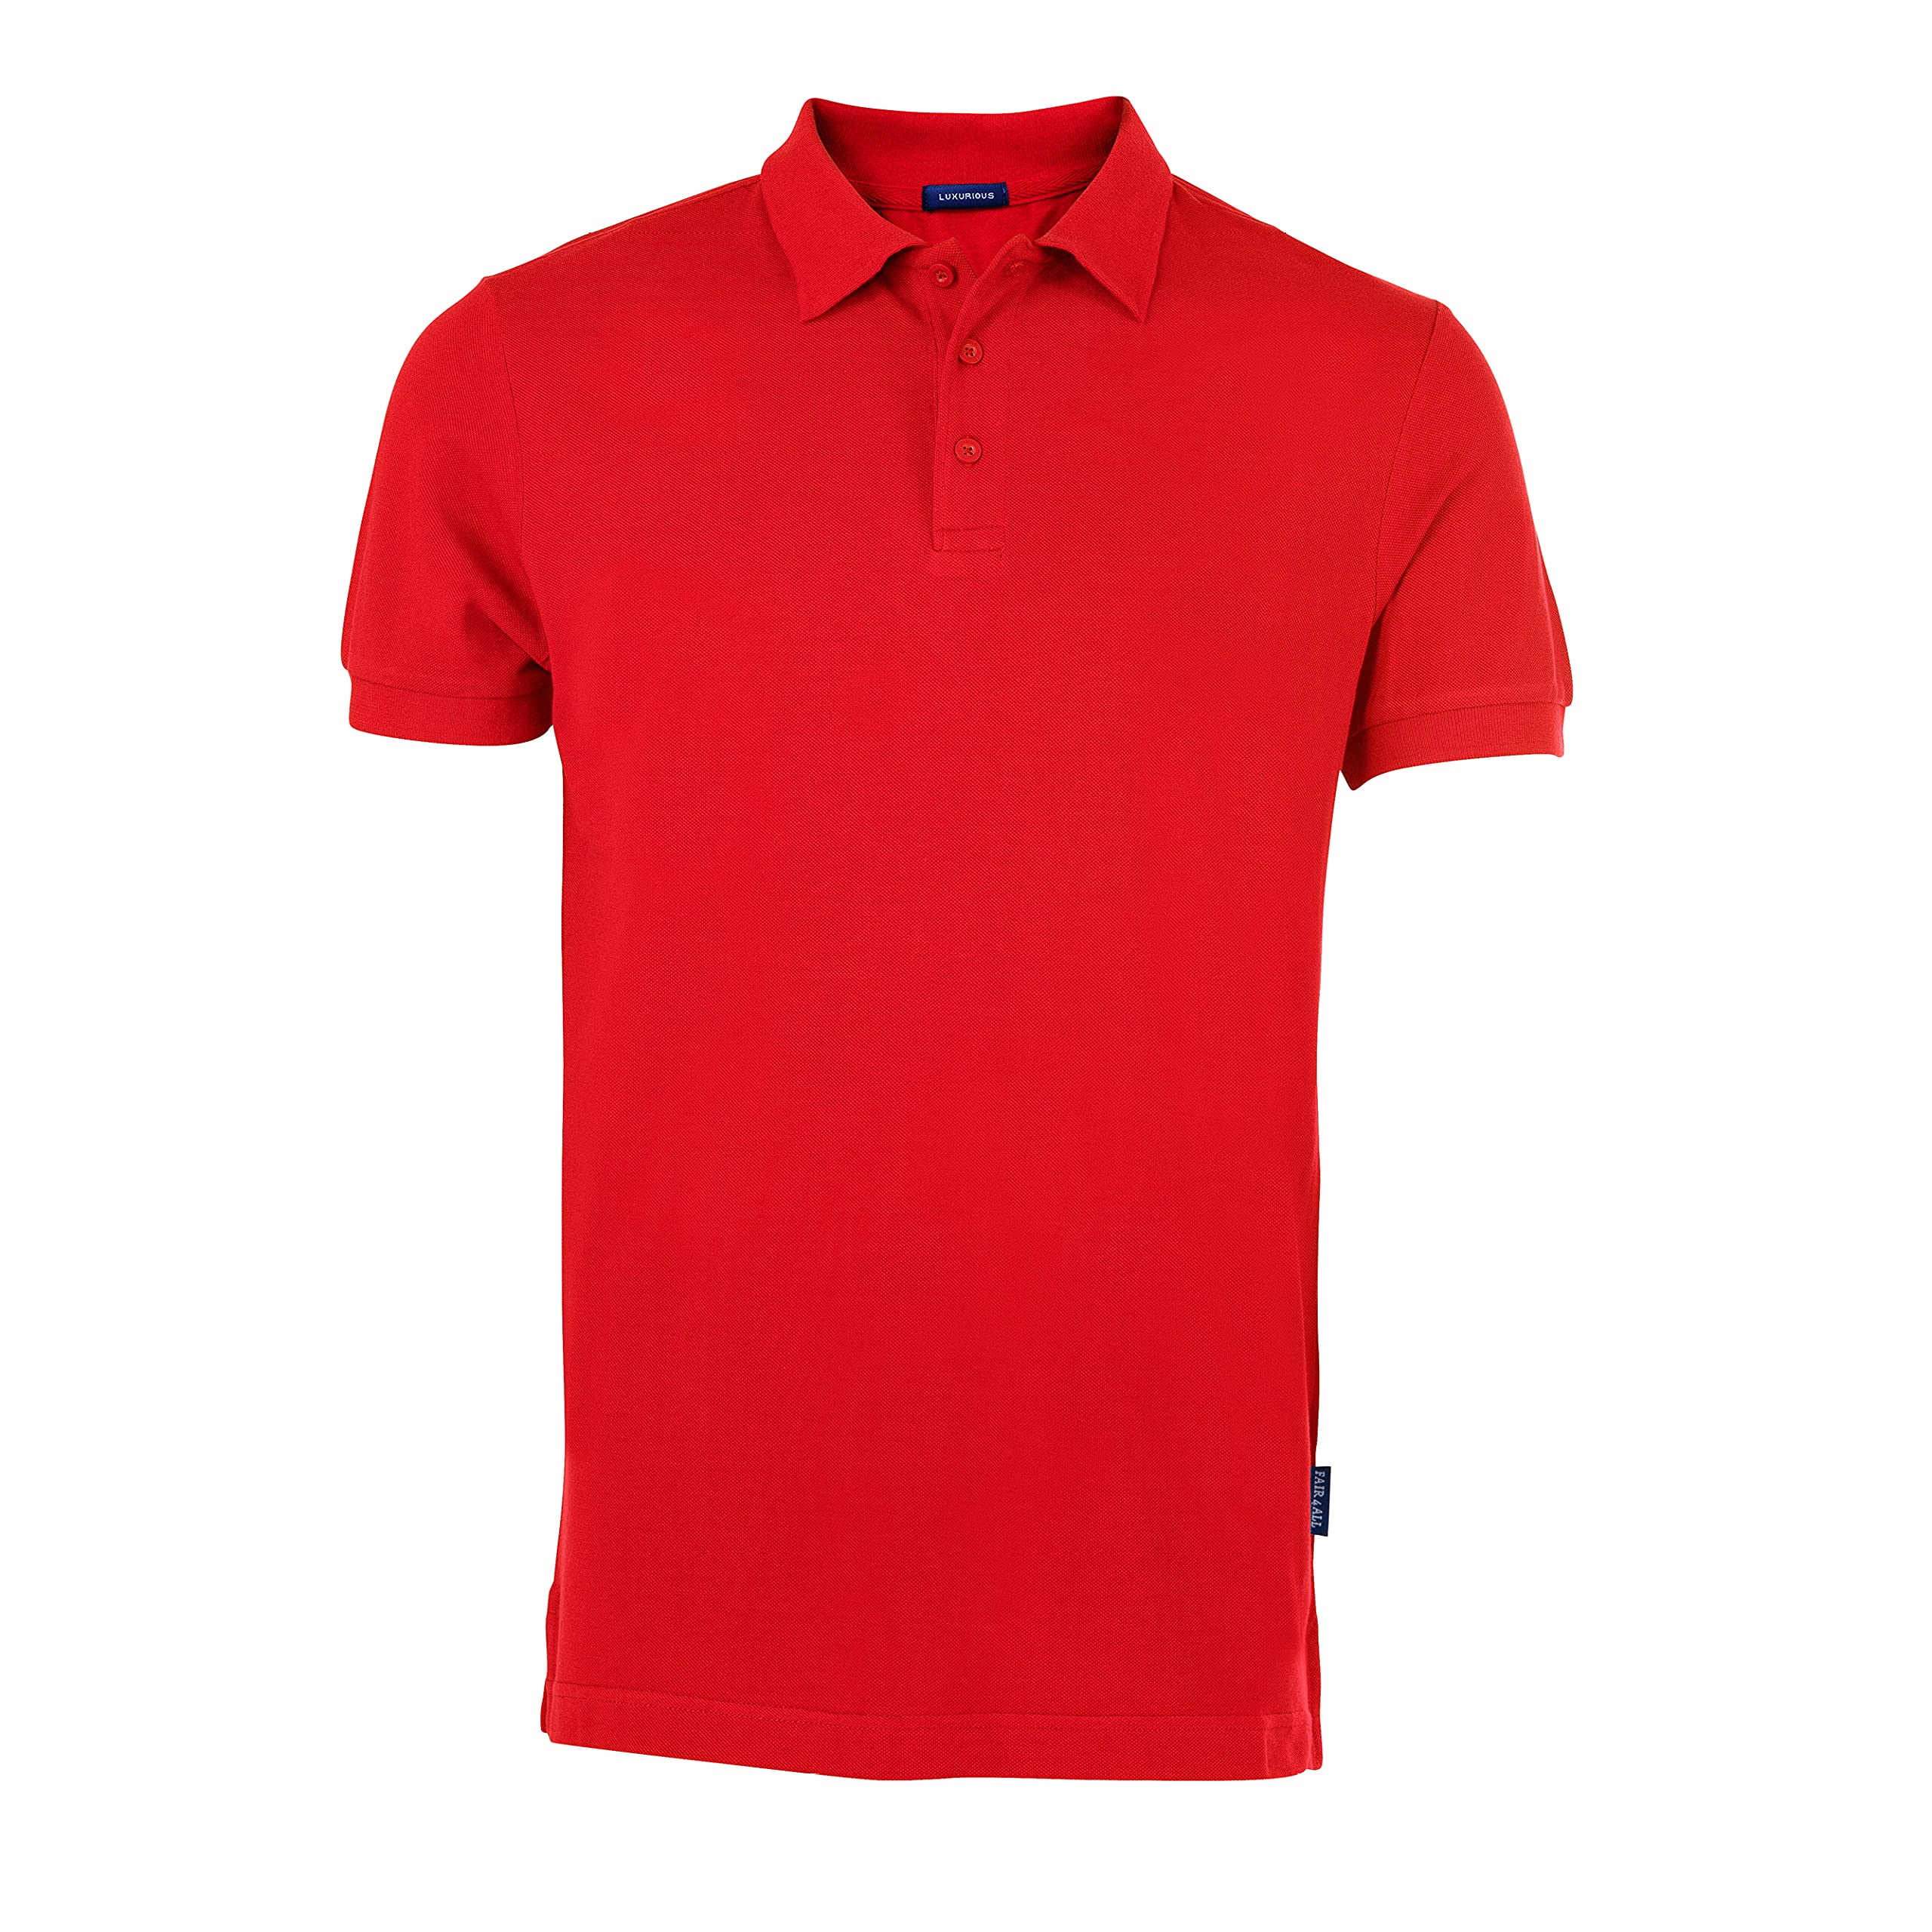 HRM Herren Luxury Polo, rot, Gr. 4XL I Premium Polo Shirt Herren aus 100% Baumwolle I Basic Polohemd bis 60°C farbecht waschbar I Hochwertige & nachhaltige Herren-Bekleidung